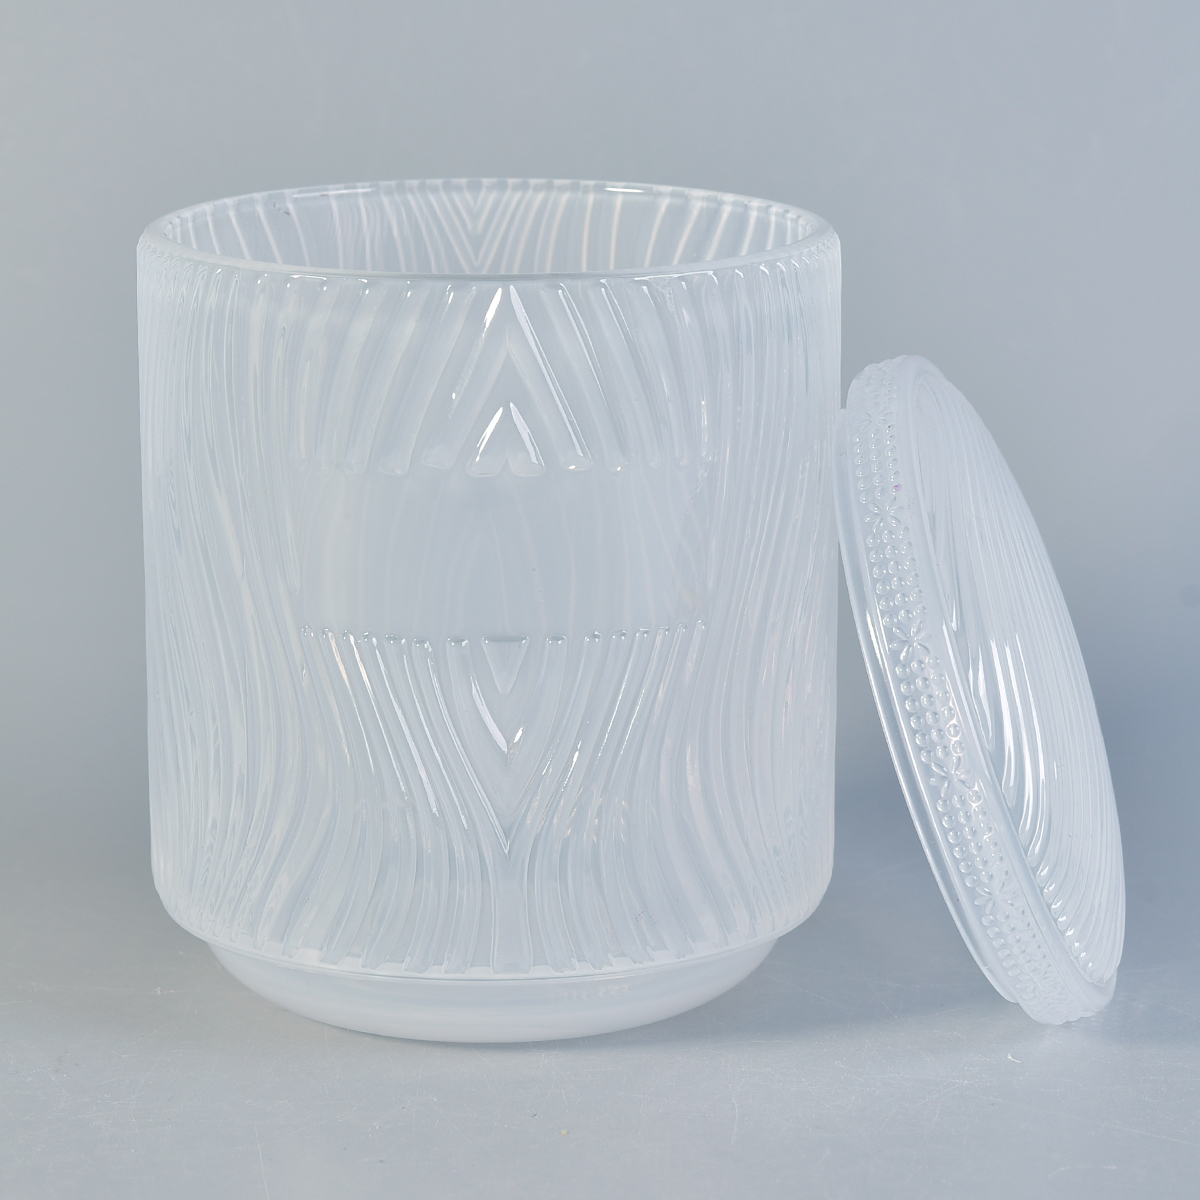 Popularne tłoczone szklane słoiki ze świecami z pokrywkami